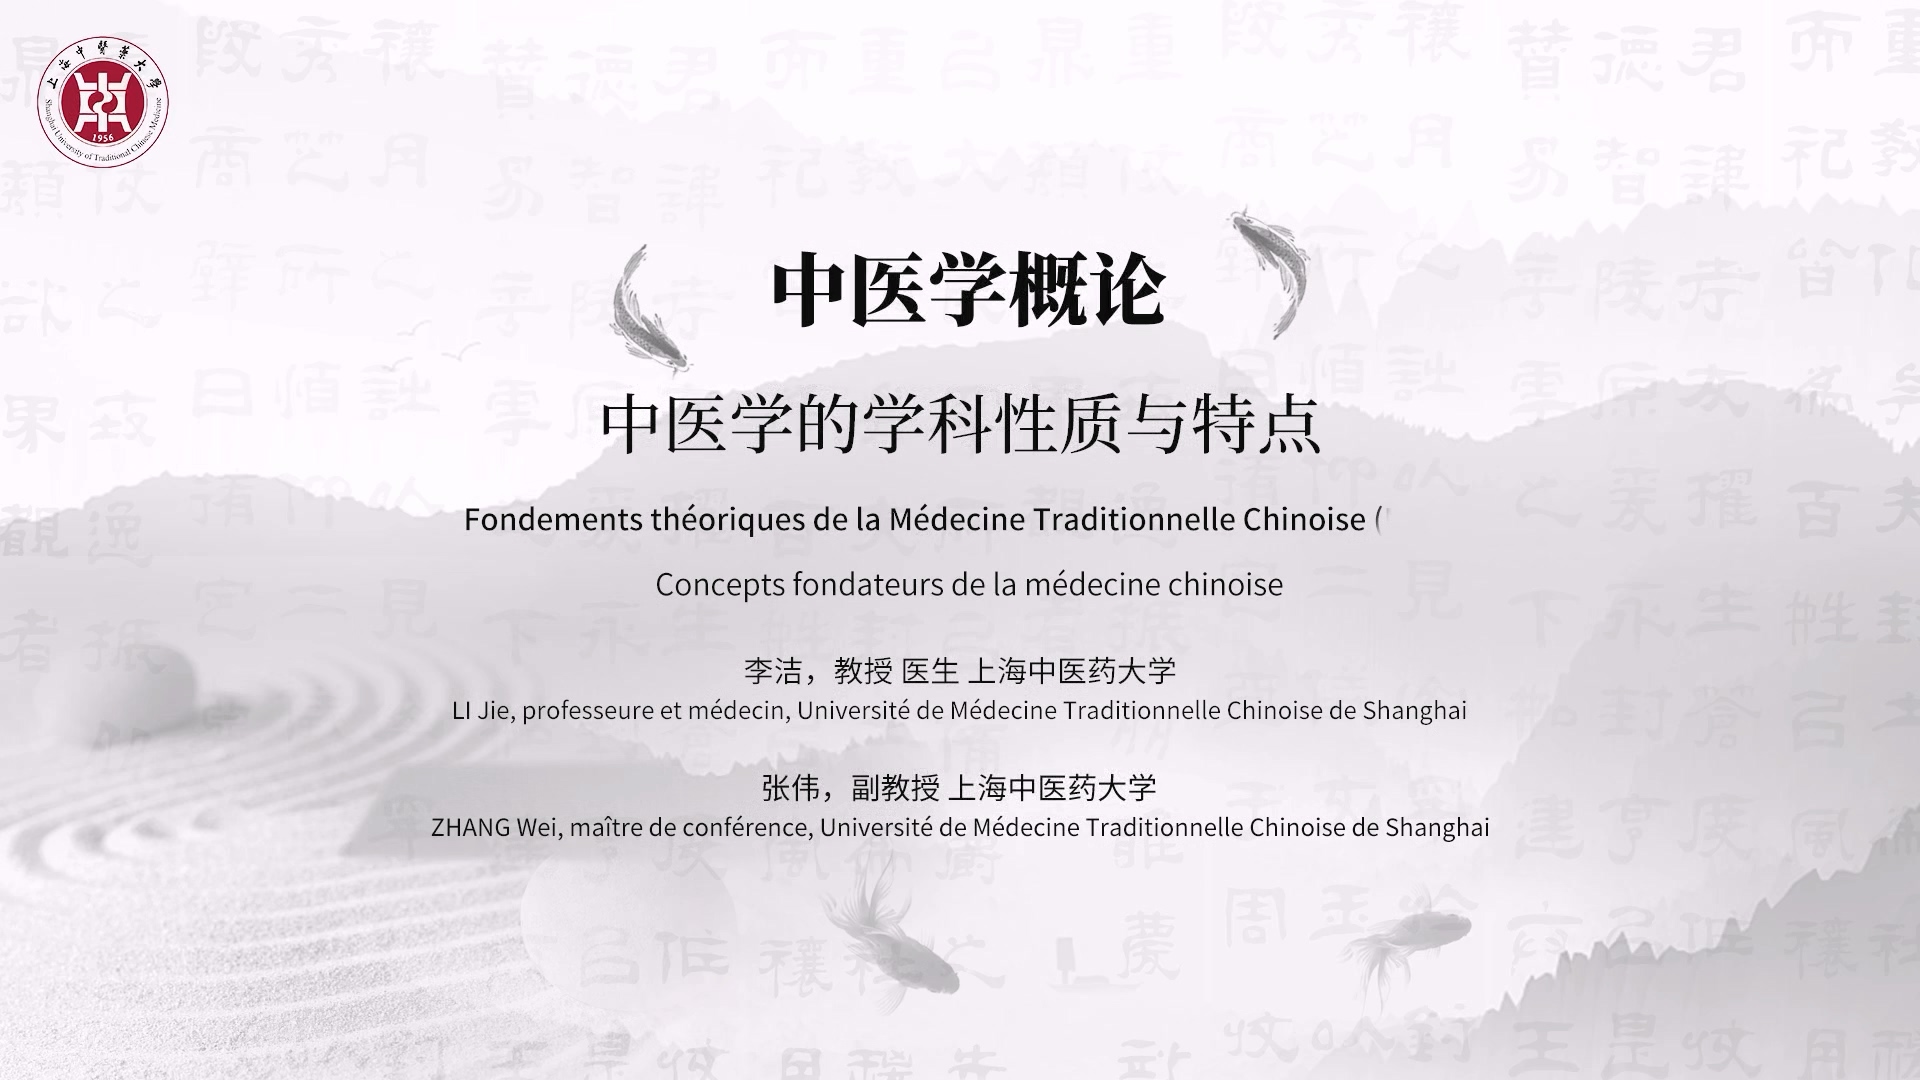 1.1 Fondements théoriques de la Médecine Traditionnelle Chinoise